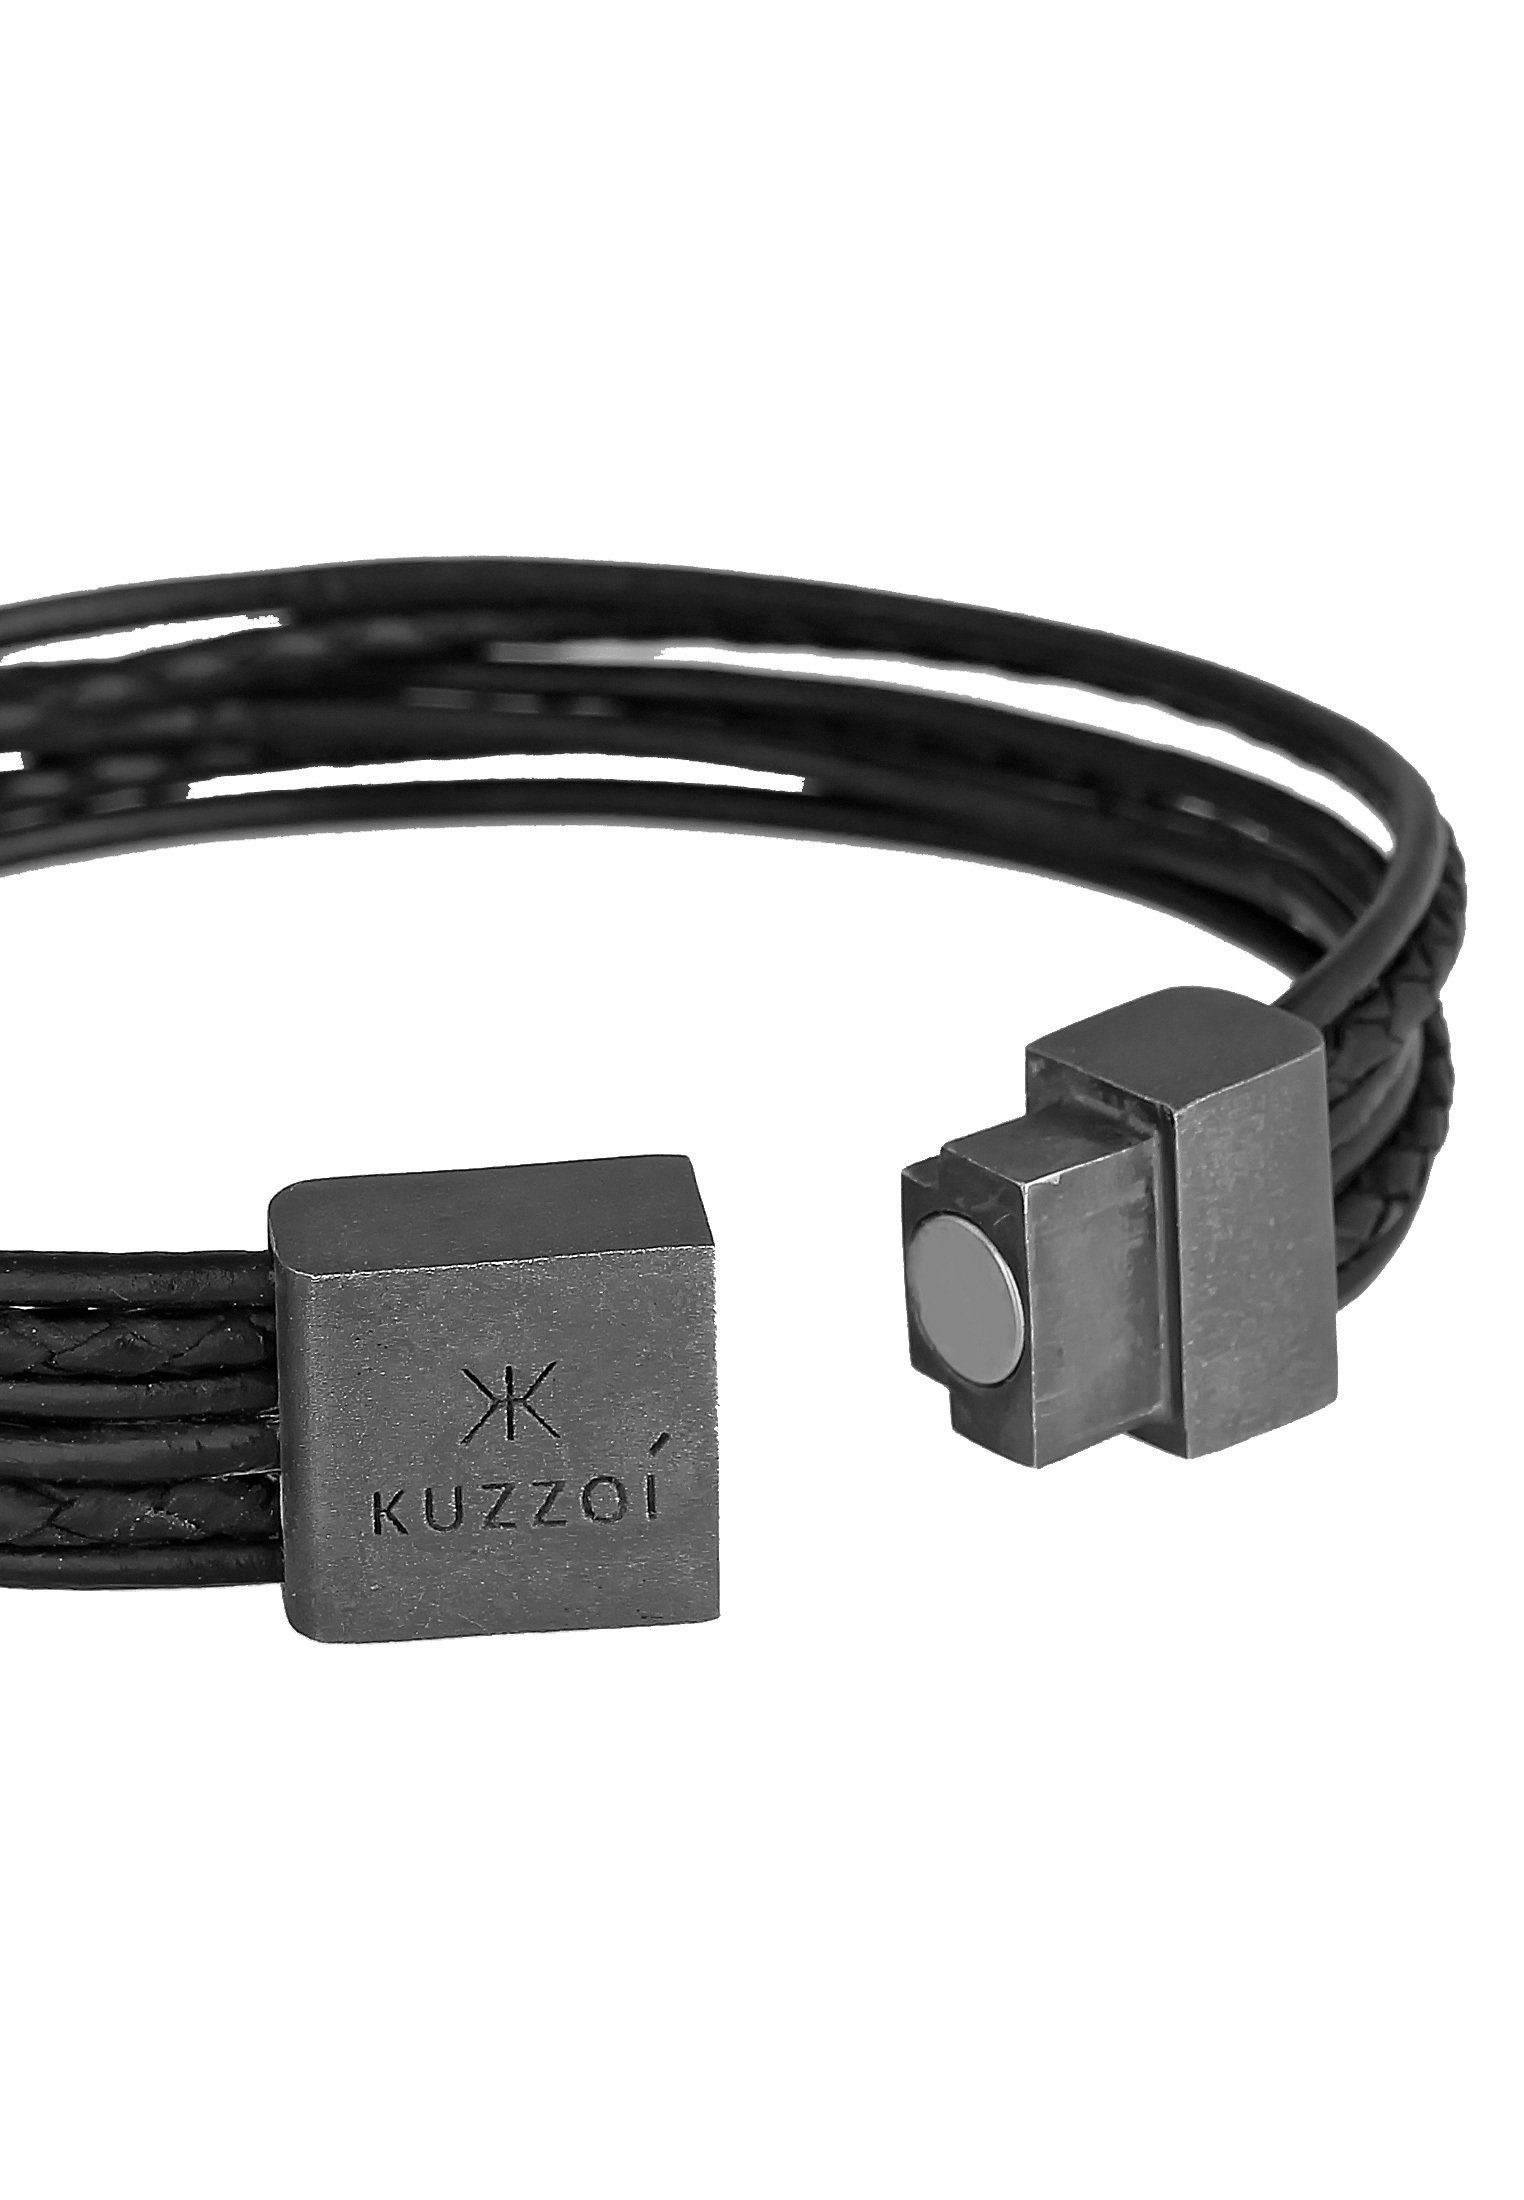 Leder Kuzzoi Armband 925 Silber Magnet Basic 6-reihig oxidiert